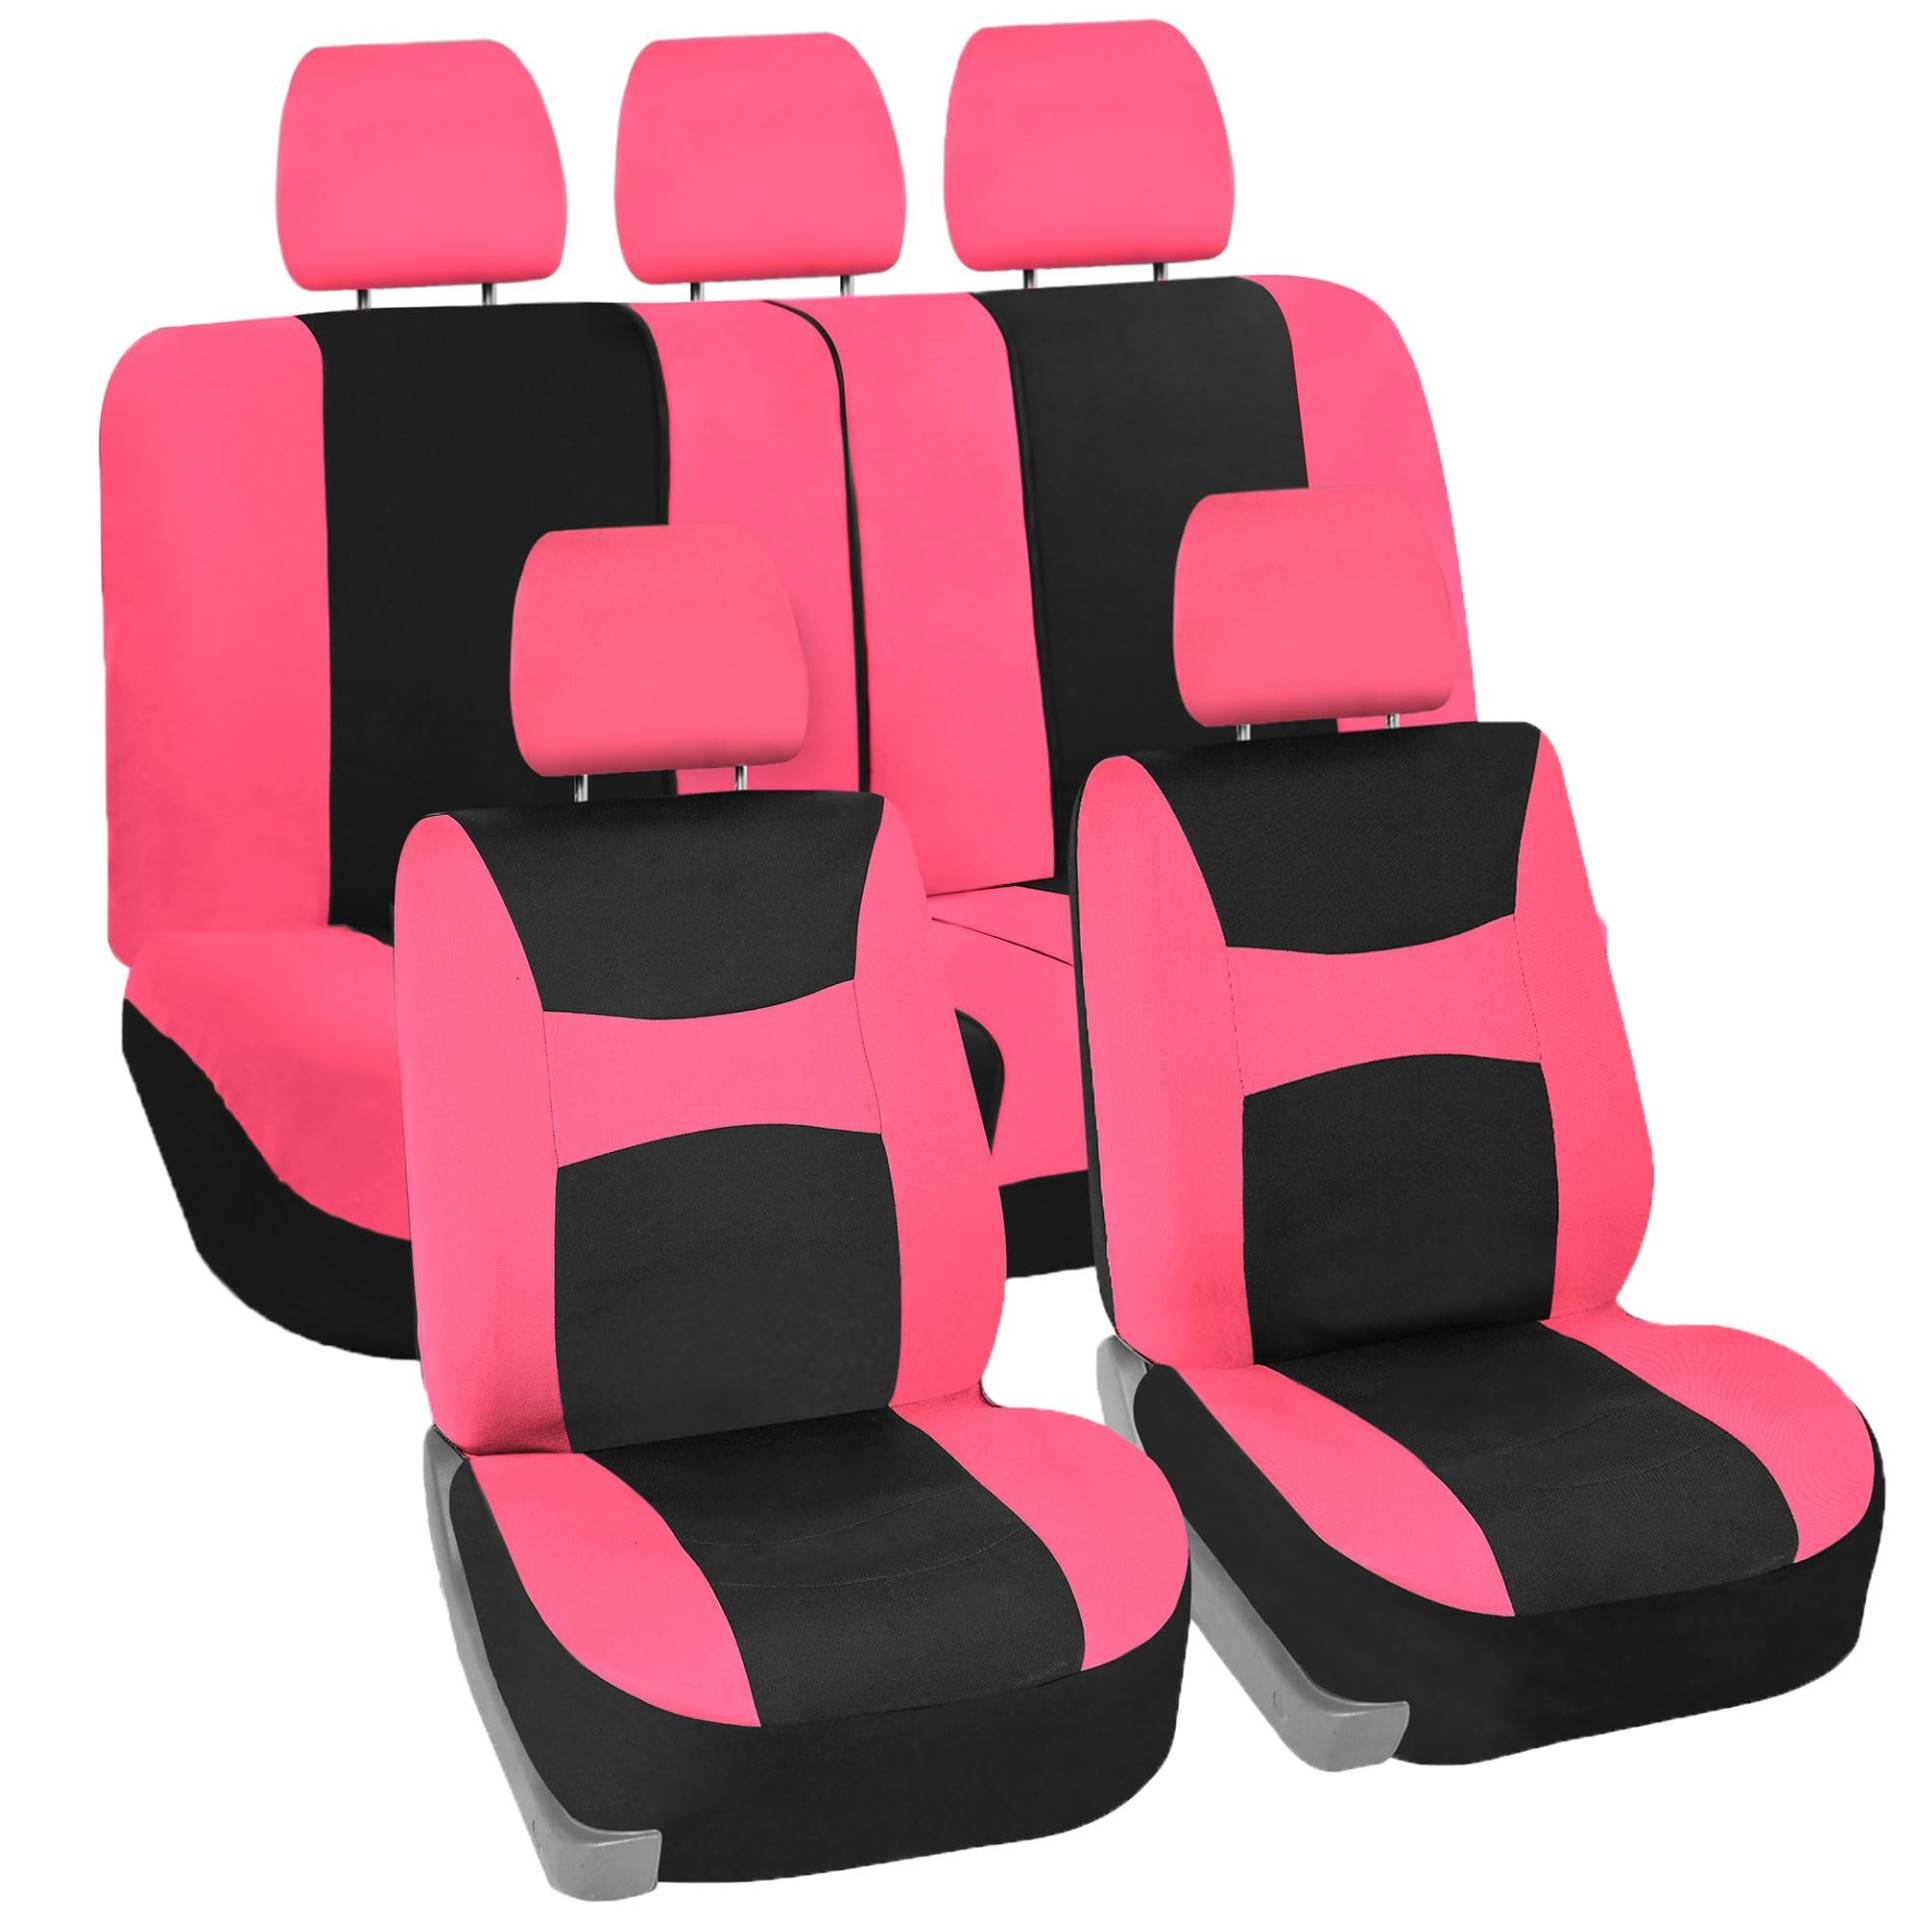 FH Group Autositzbezüge, rosa, universell passend für Eimer und Bankbezug, passend für die meisten Autos, SUVs und Lastwagen (Komplettset Airbag kompatibel mit geteilter Bank) FB030PINK115 von FH GROUP